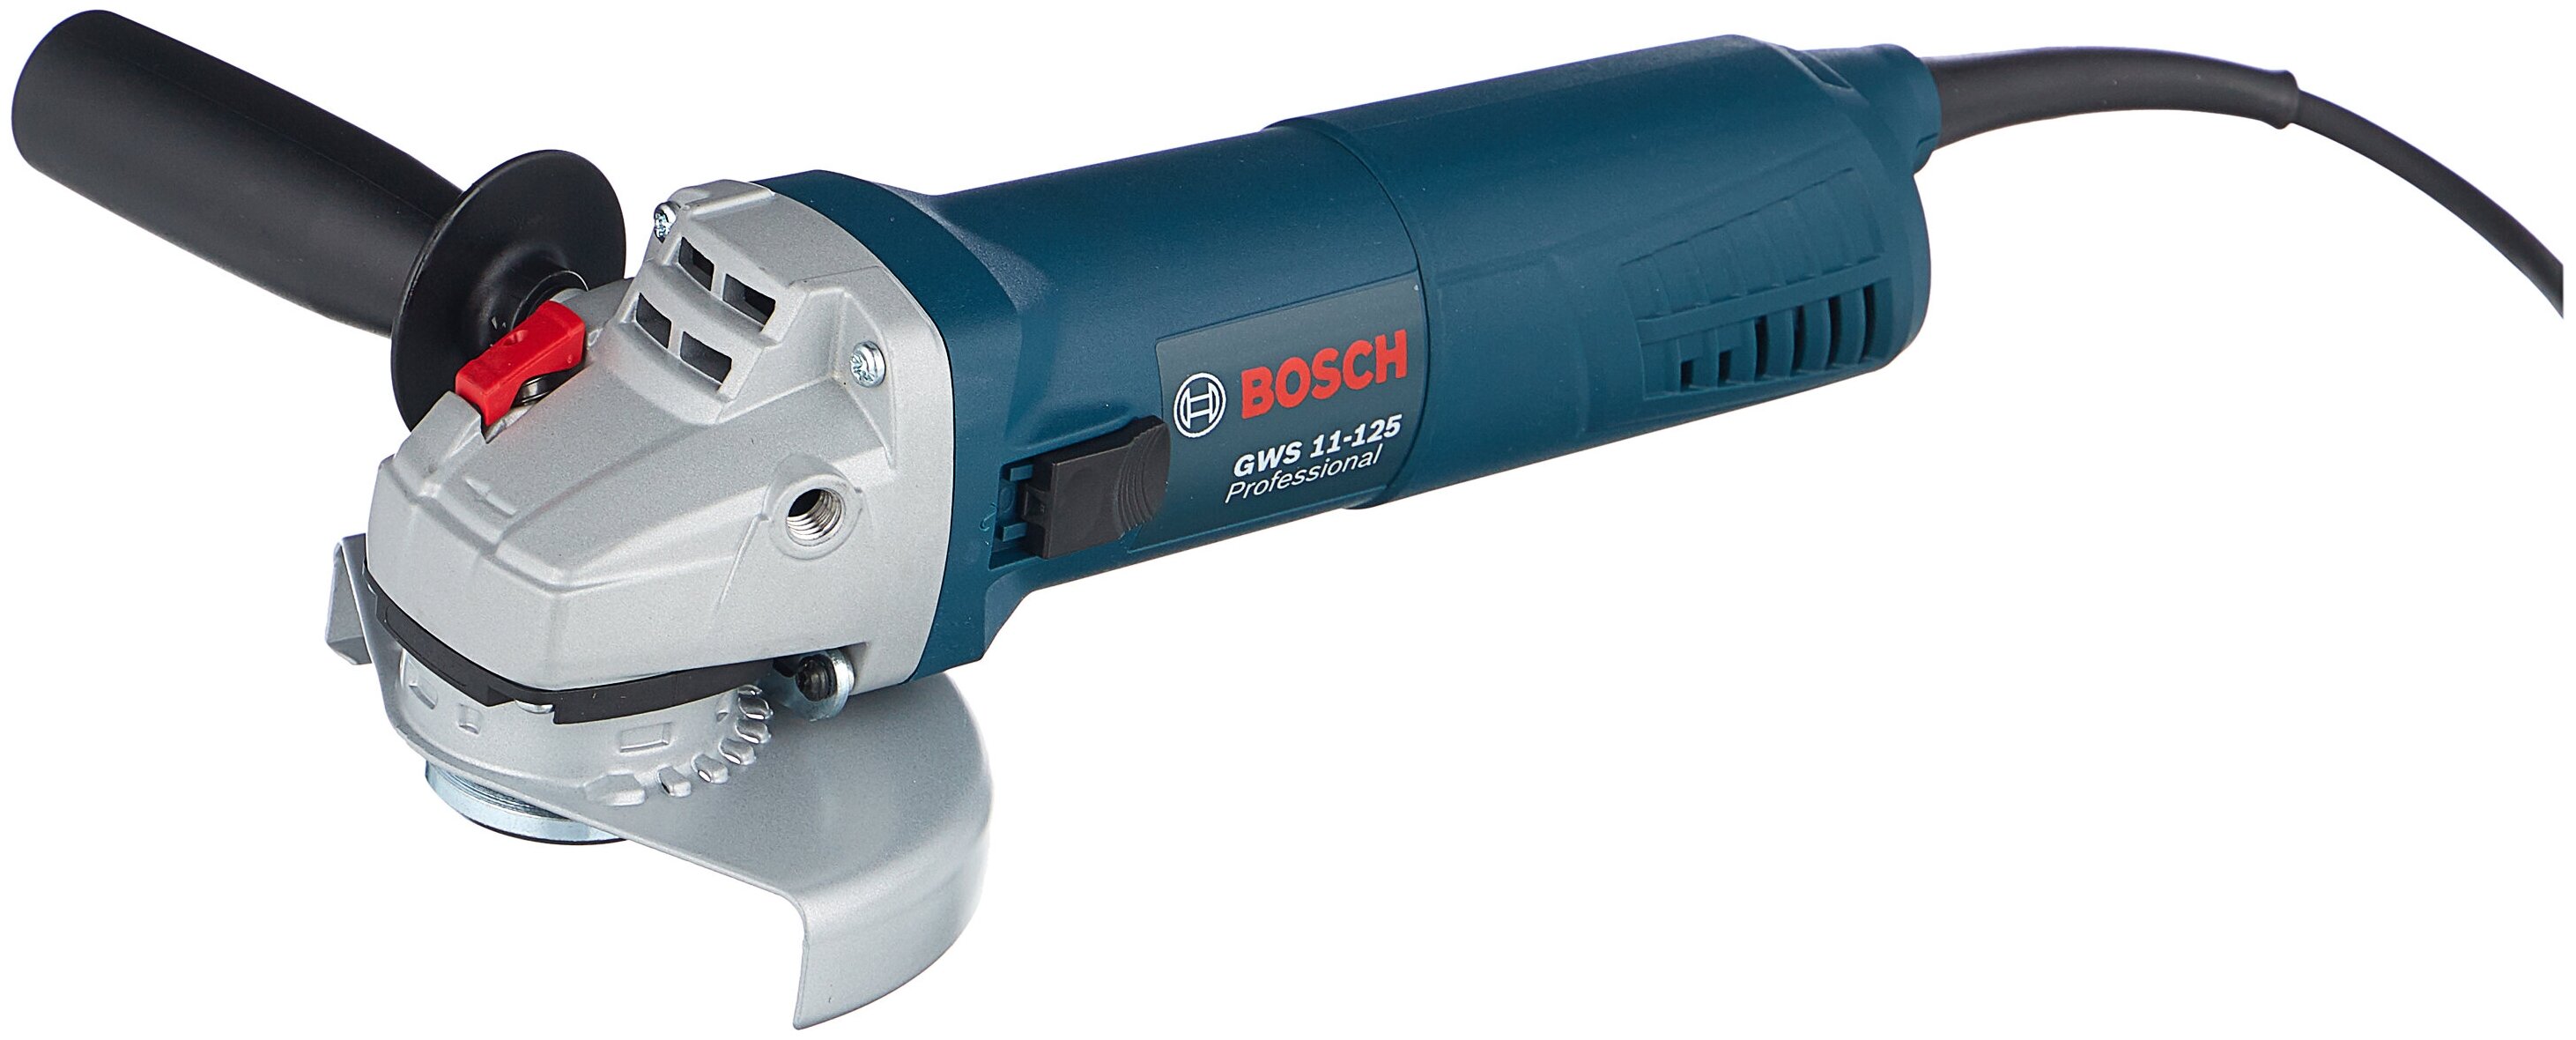  Bosch 125 с регулировкой оборотов